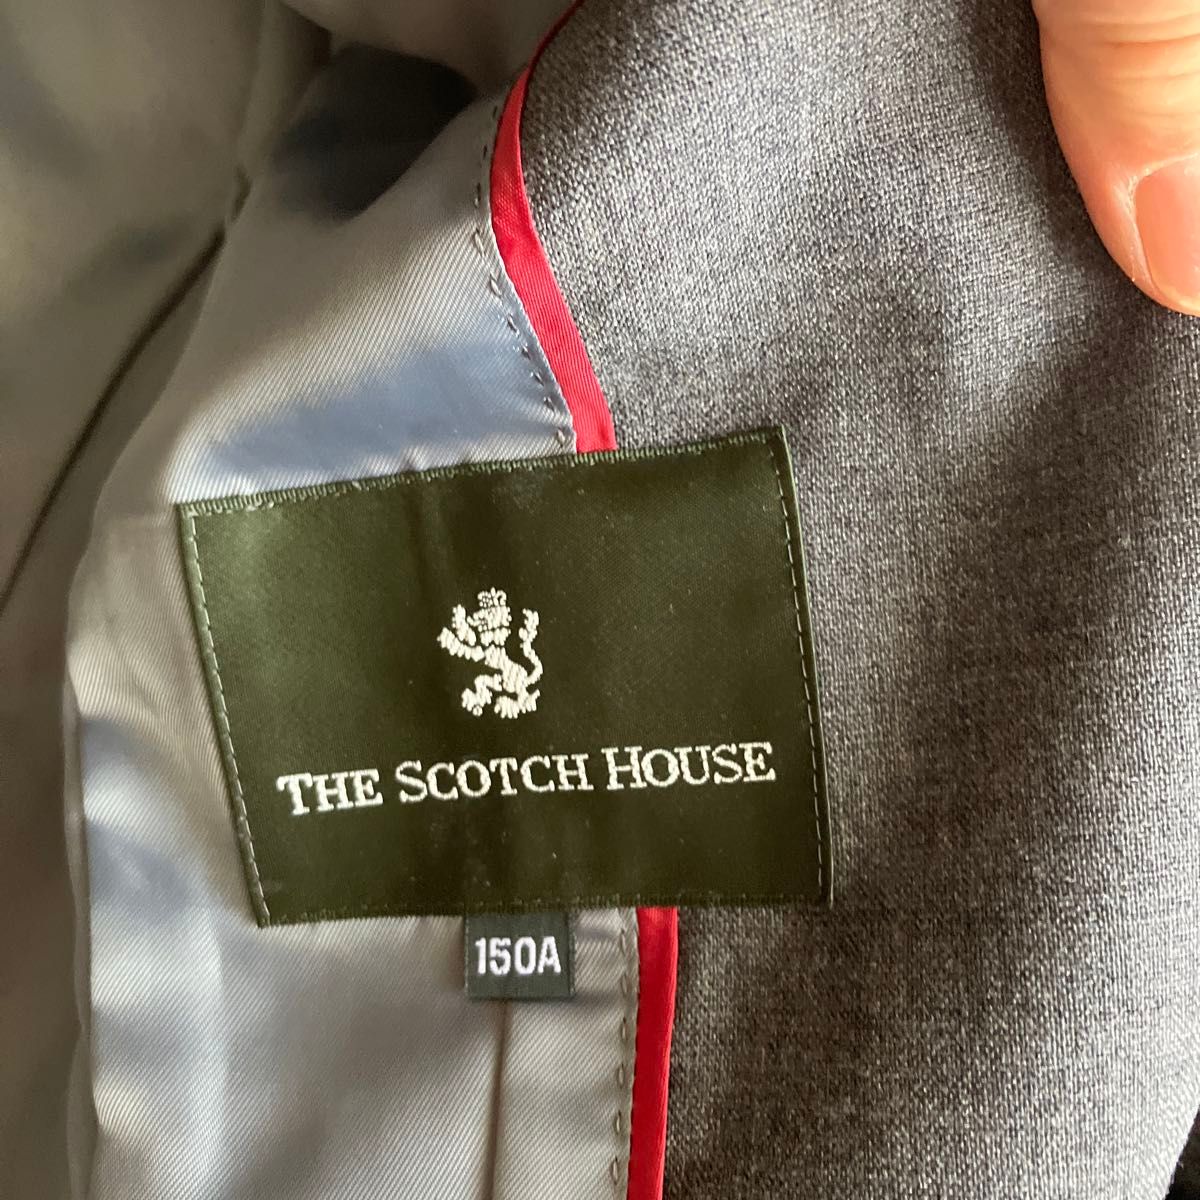 スコッチハウス150      シャツとネクタイはオマケ